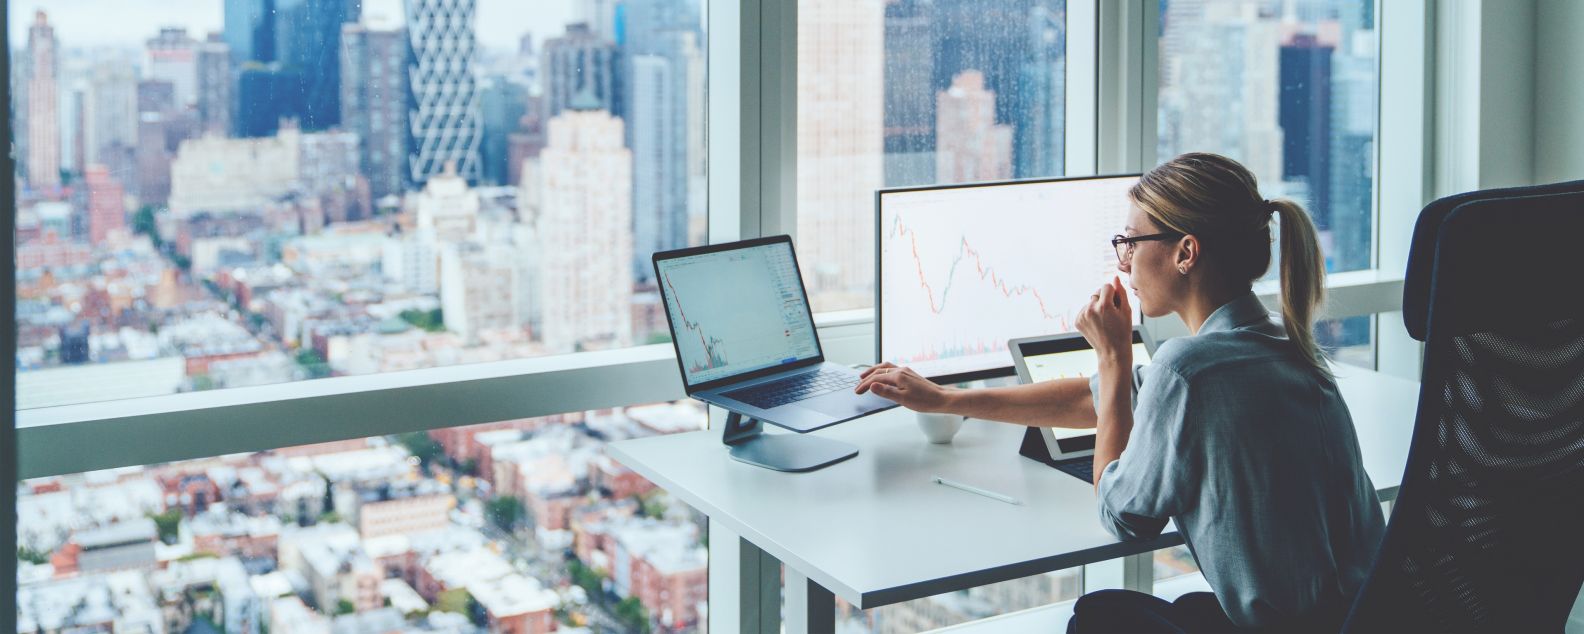 Rückansicht einer Person, die in einem Büro in einem Panorama-Wolkenkratzer am Schreibtisch sitzt und einen Desktop-Computer mit Finanzgraphen und Statistiken auf dem Bildschirm nutzt